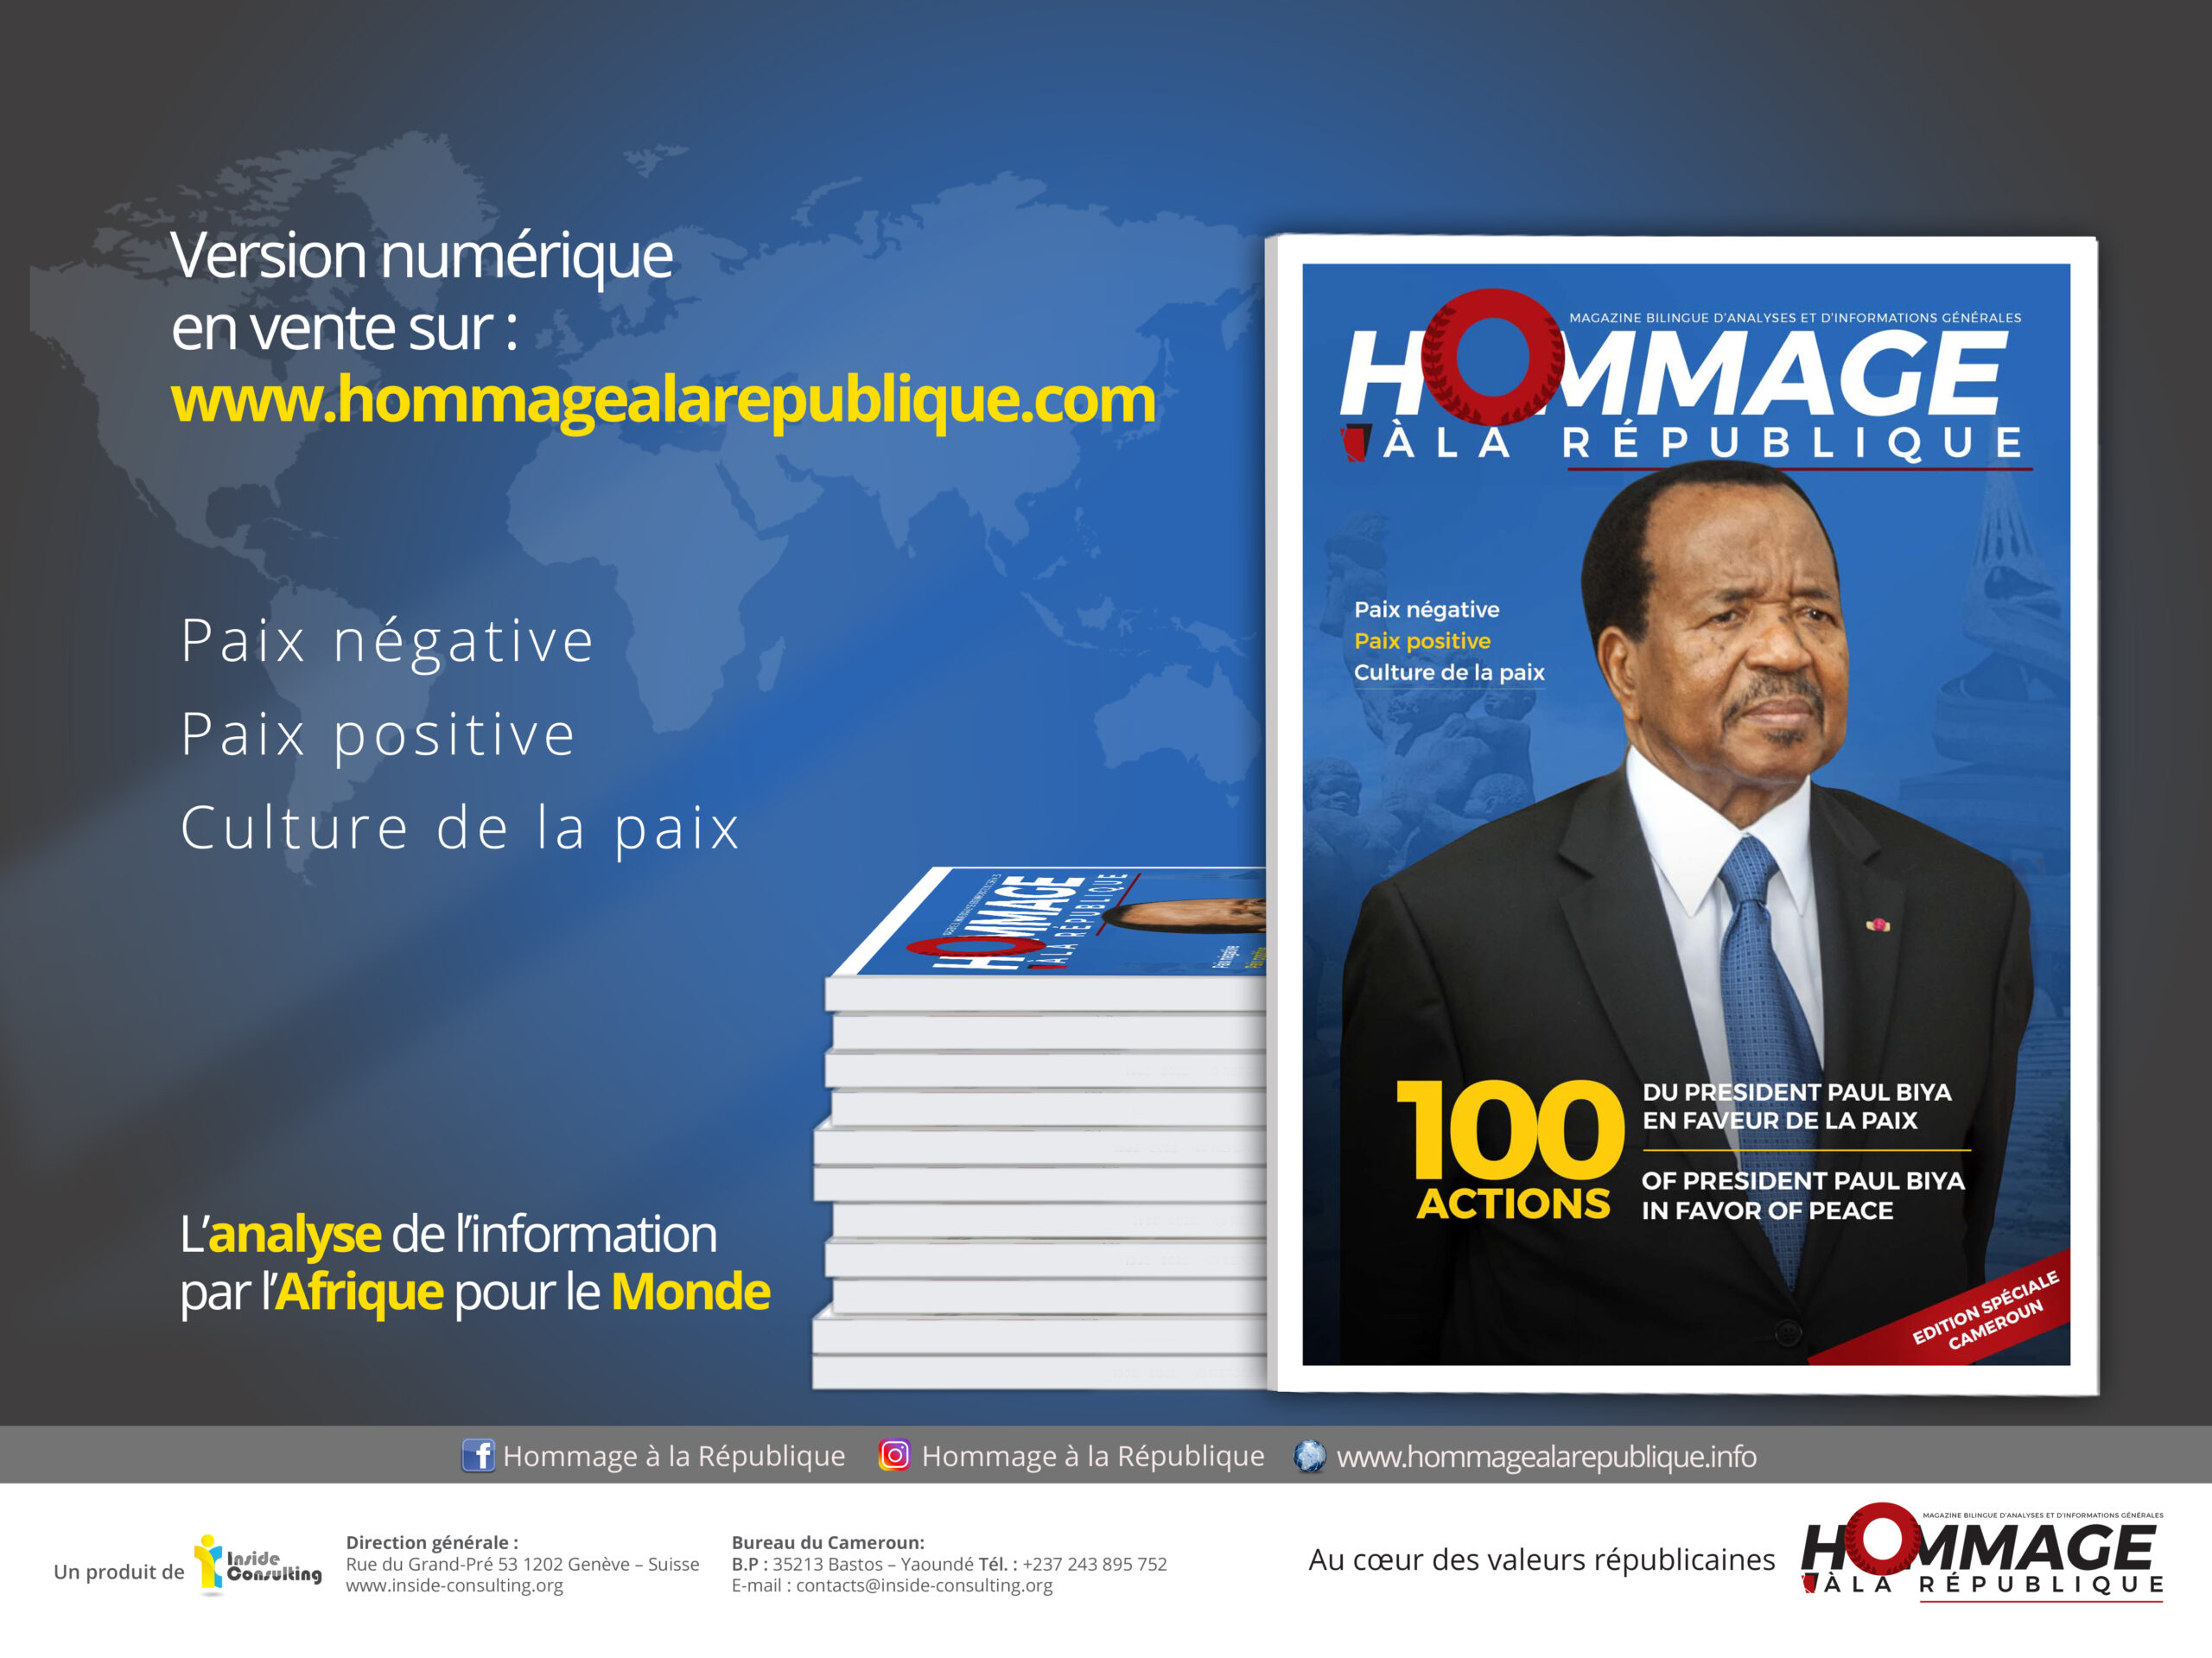 HOMMAGE À LA RÉPUBLIQUE – 100 Actions du Président Paul BIYA en faveur de la paix